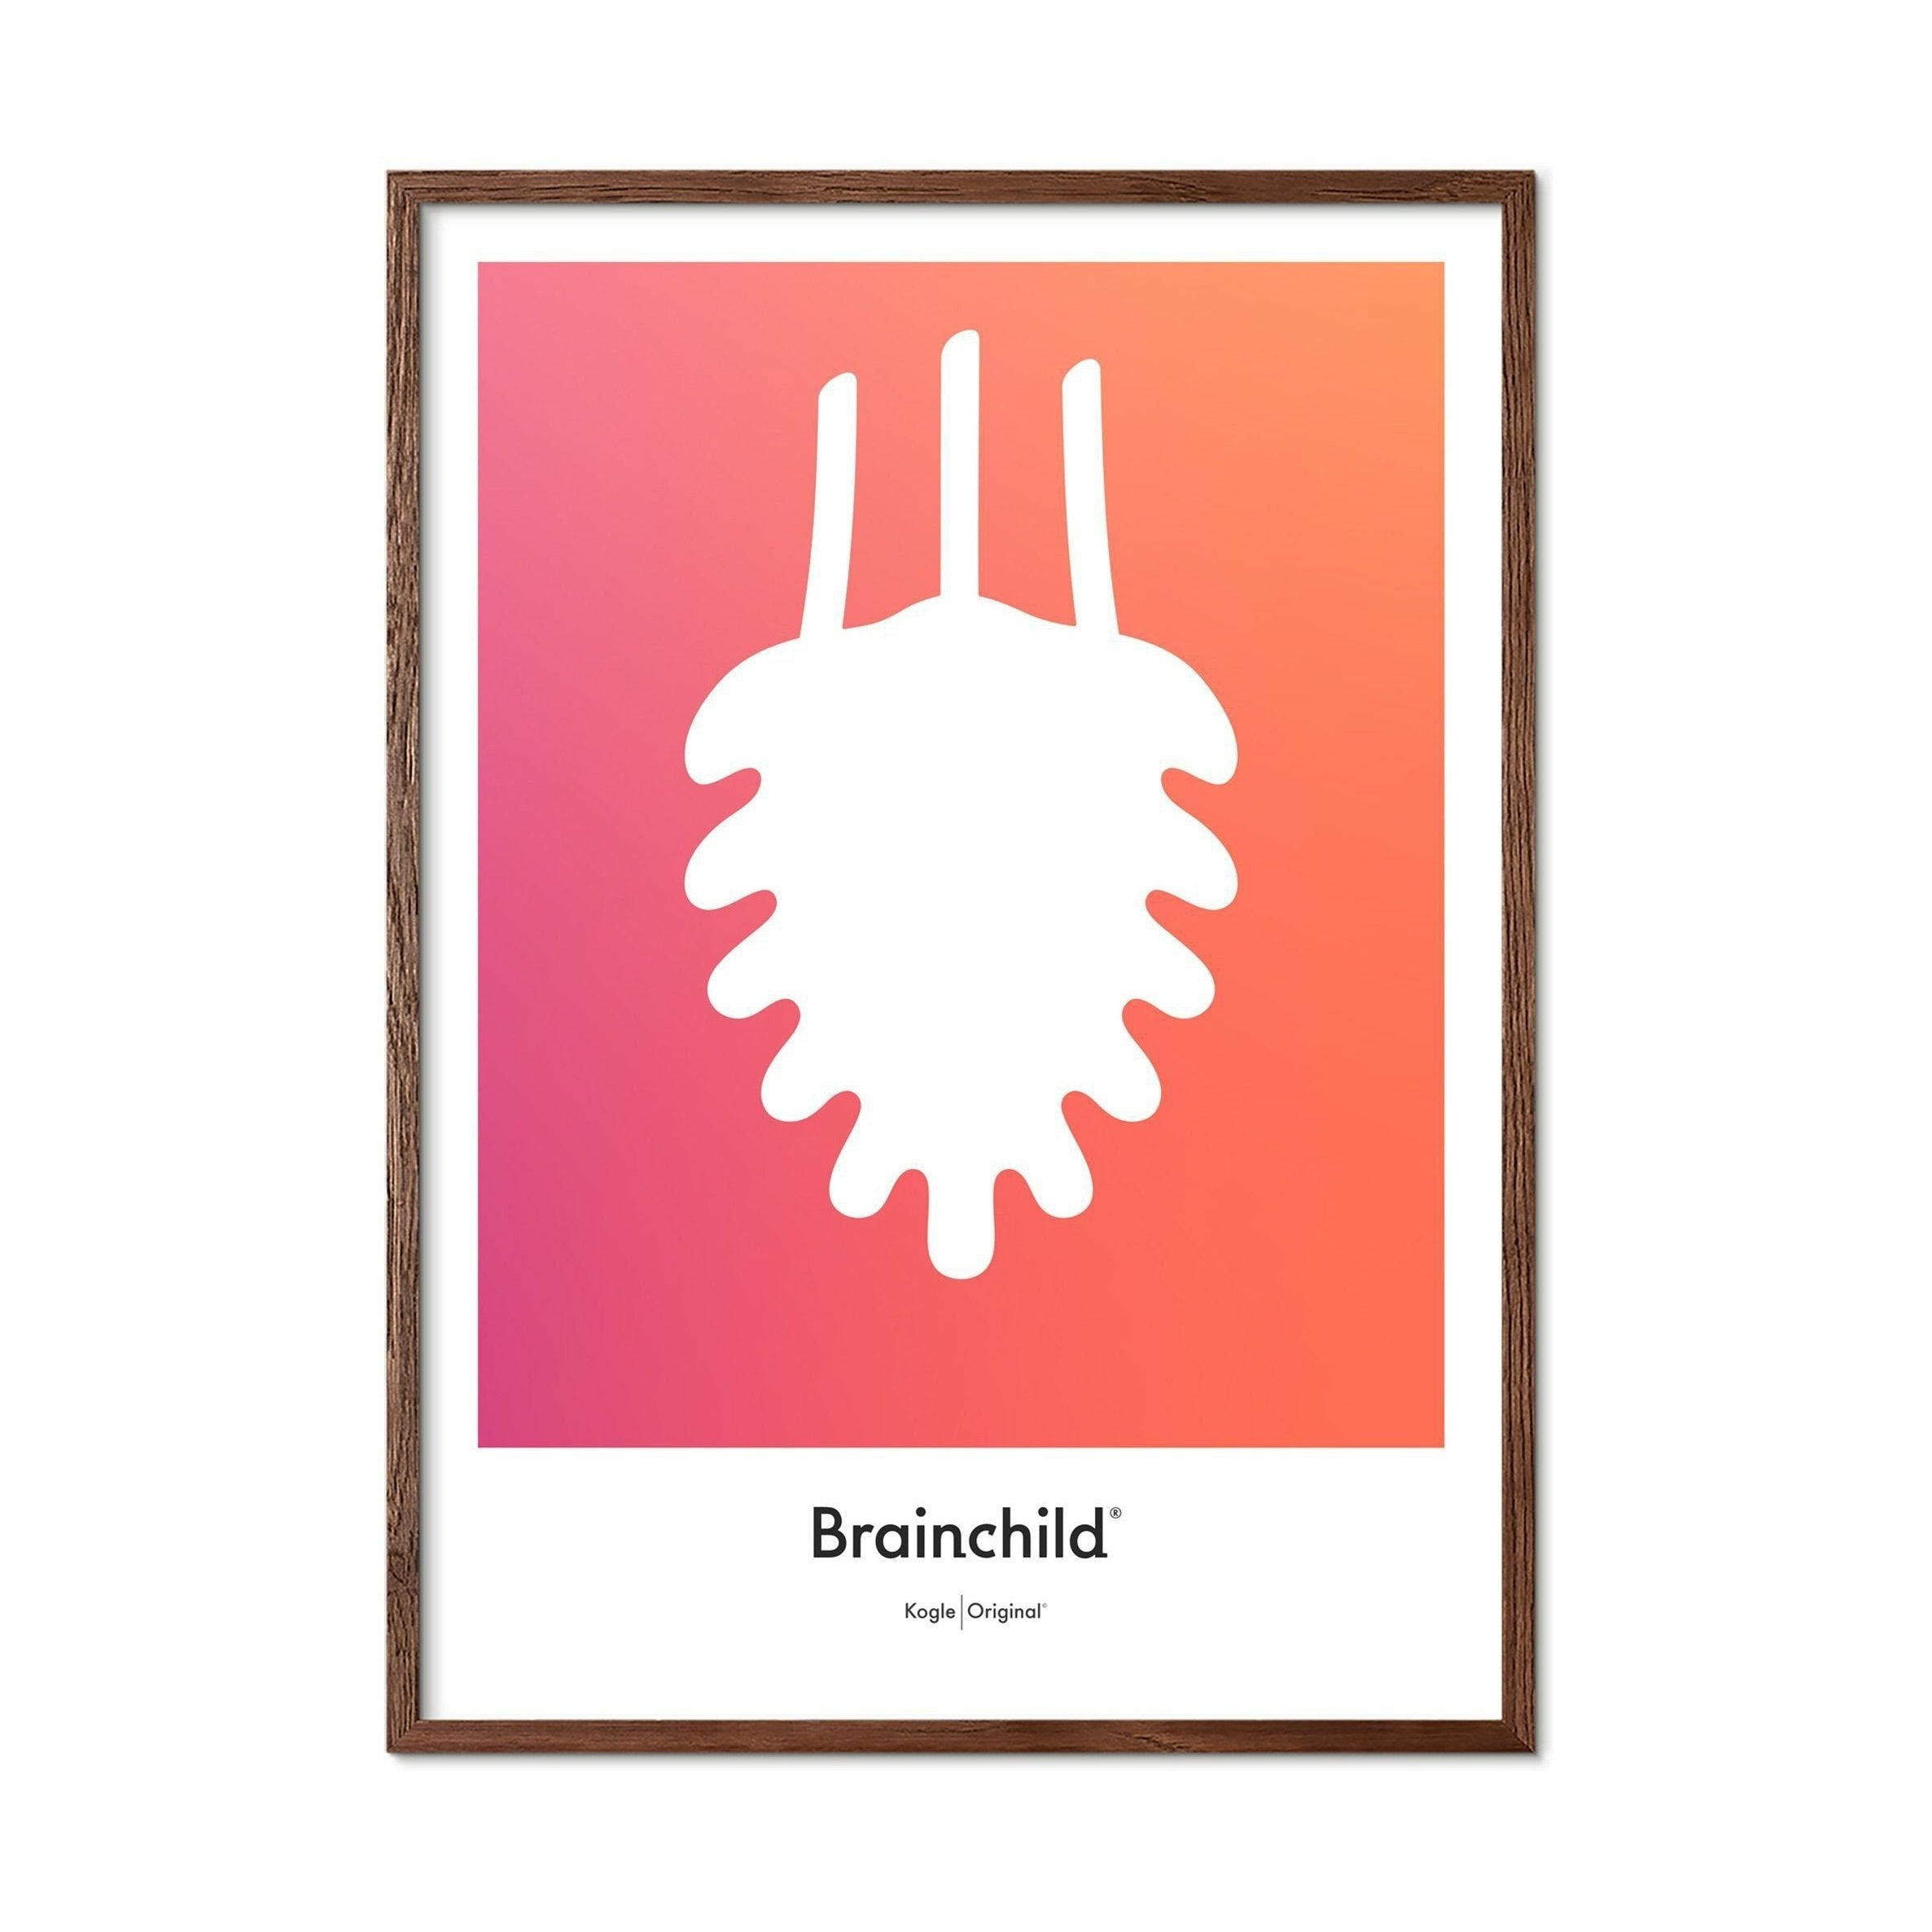 Brainchild Pine Cone Design Icon Poster, ramme lavet af mørk træ 30x40 cm, orange